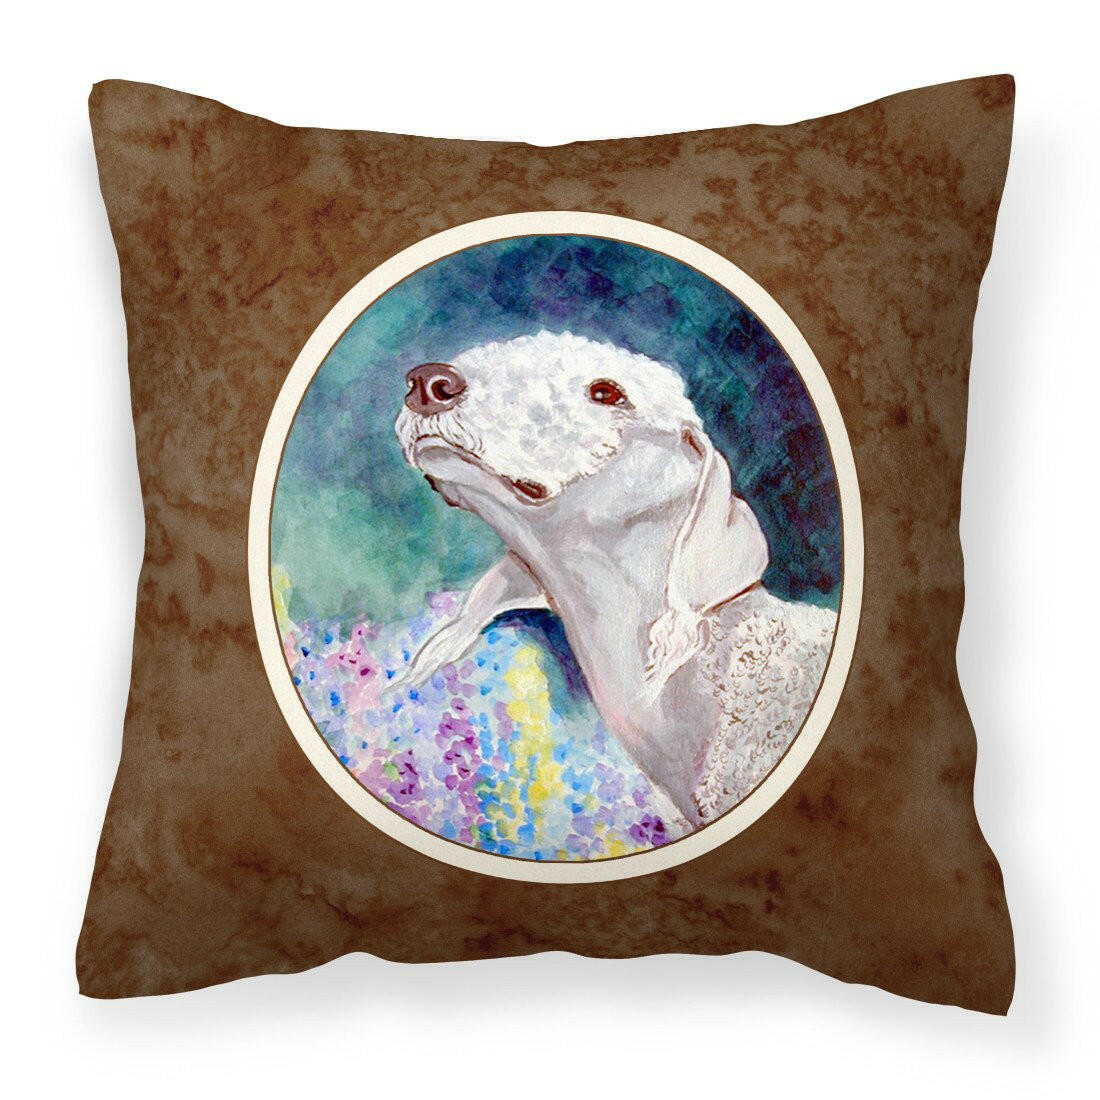 Bedlington Terrier Fabric Decorative Pillow 7226PW1414 - the-store.com